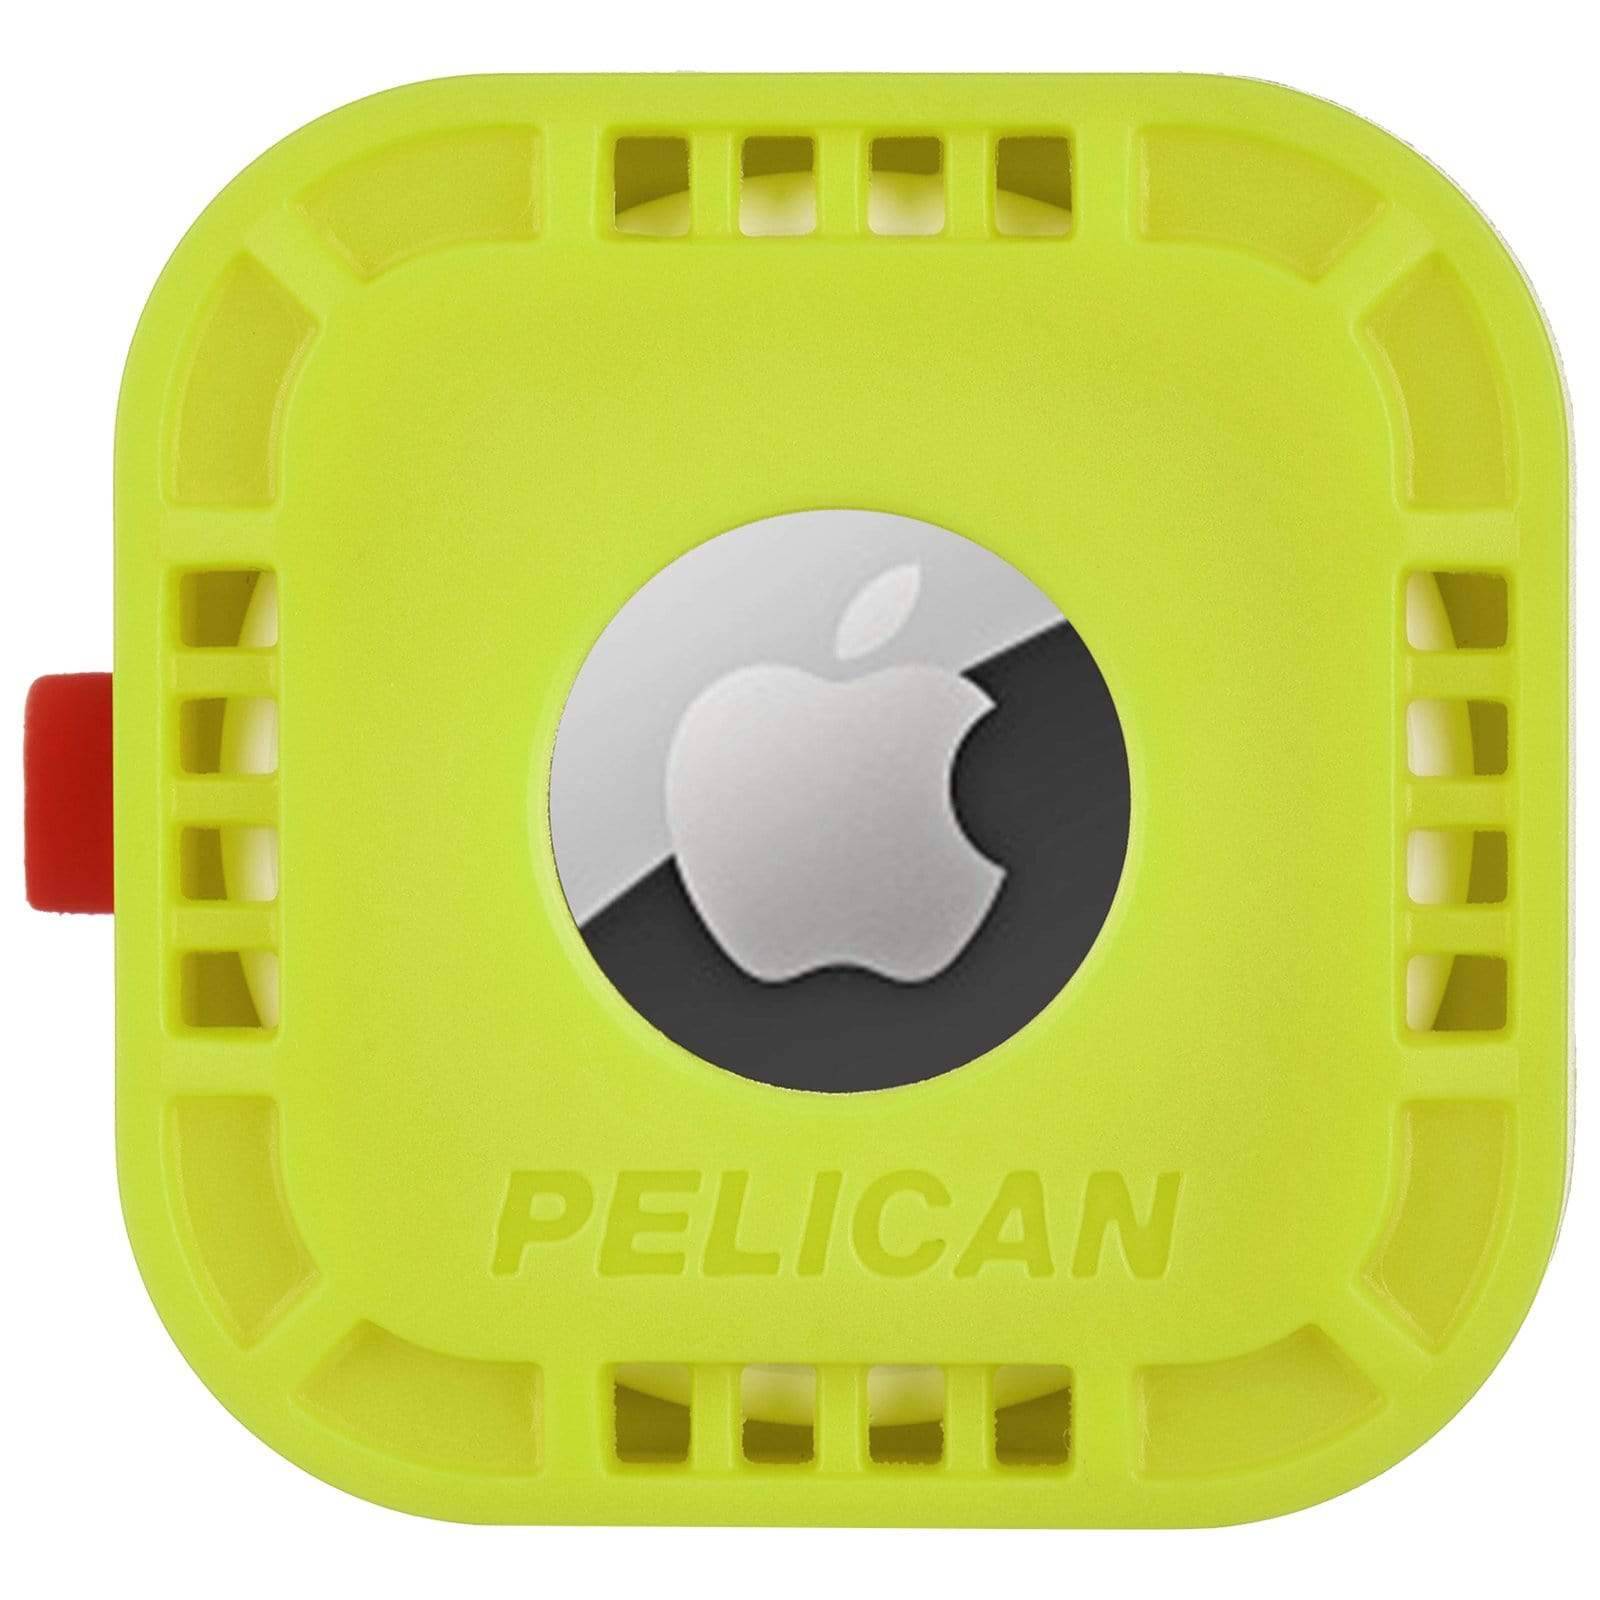 Pelican case • Jämför (100+ produkter) på PriceRunner »